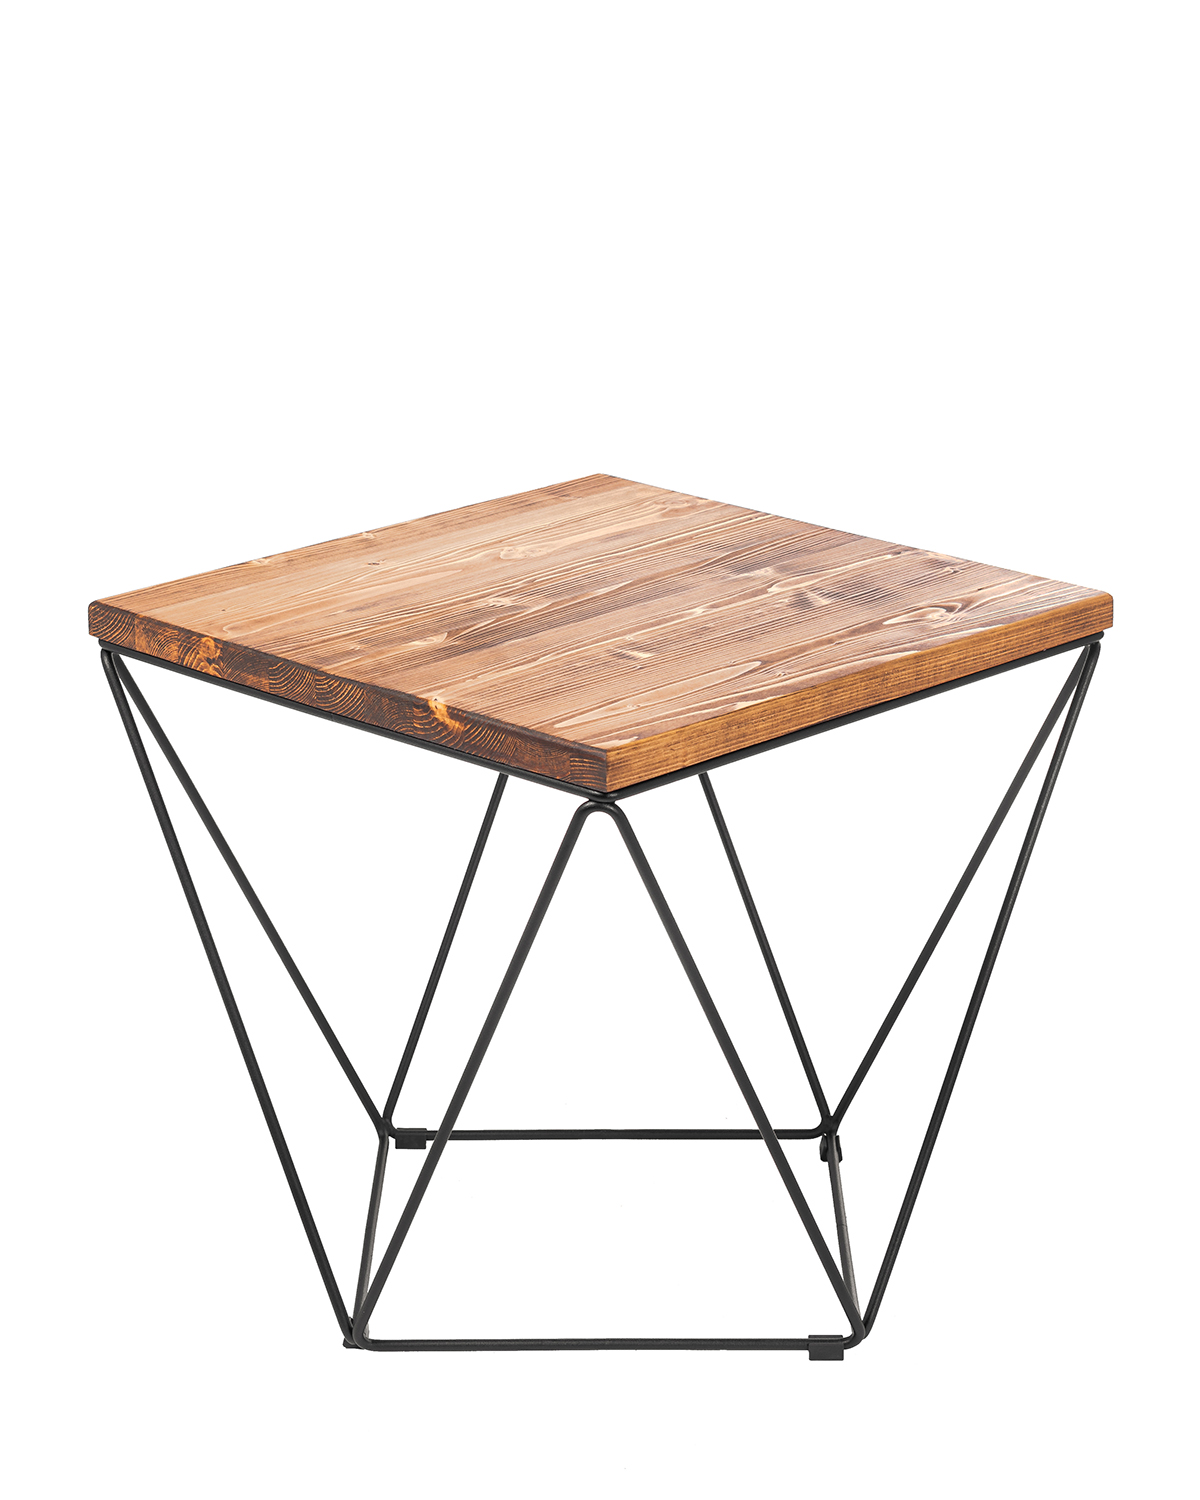 журнальный стол ilwi MBL-W-TL-T-1-M/1/3 кофейный металлический деревянный